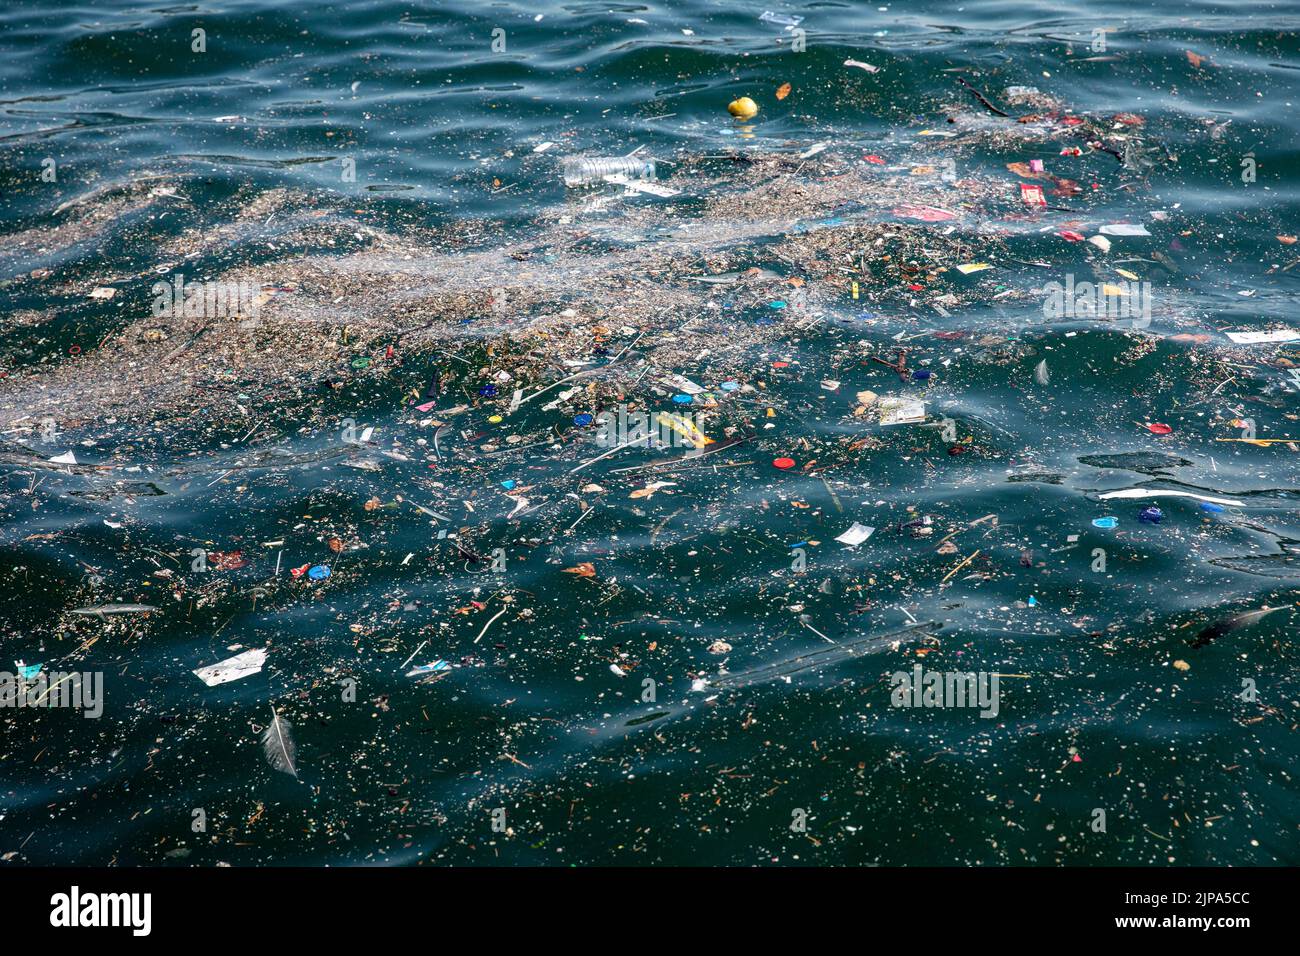 Nach heftigem Regen und einem Sturm in Istanbul schwebt auf der Meeresoberfläche im und um den Pier von Karakoy City Lines herum Einweg-Plastikmüll. Stockfoto